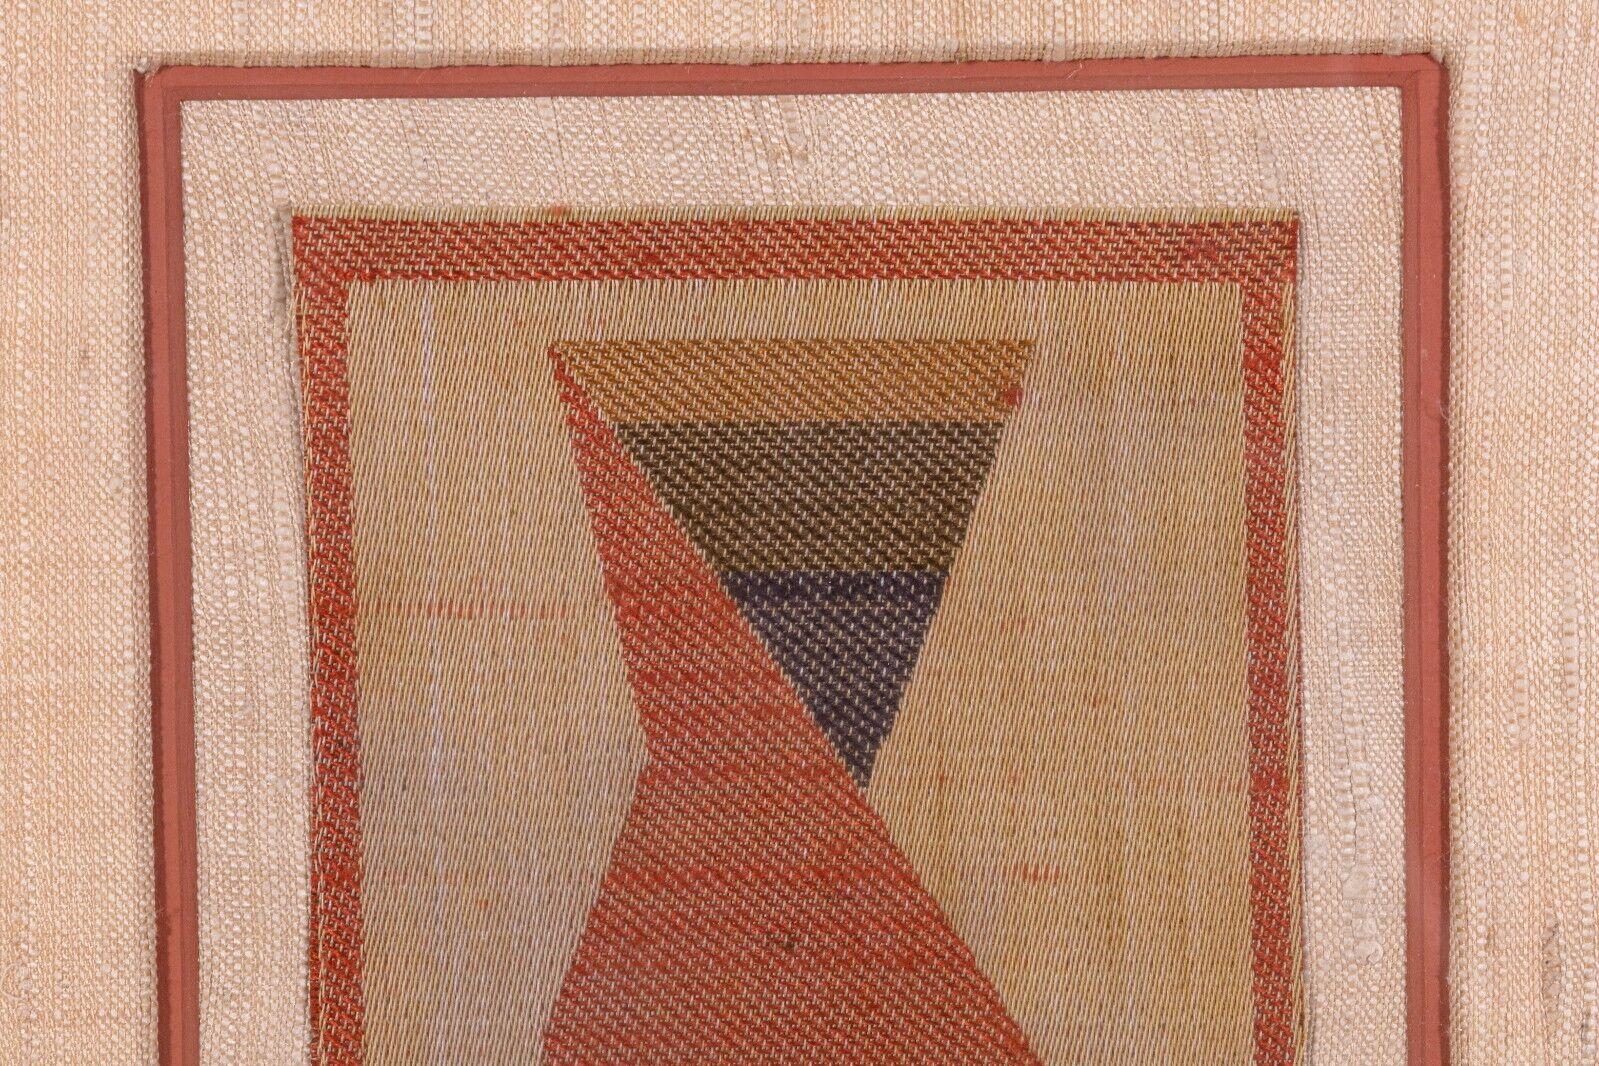 Boris Kroll Mid-Century Modern Woven Fabric Monogram Bk Signed Verso Framed 1965 For Sale 1